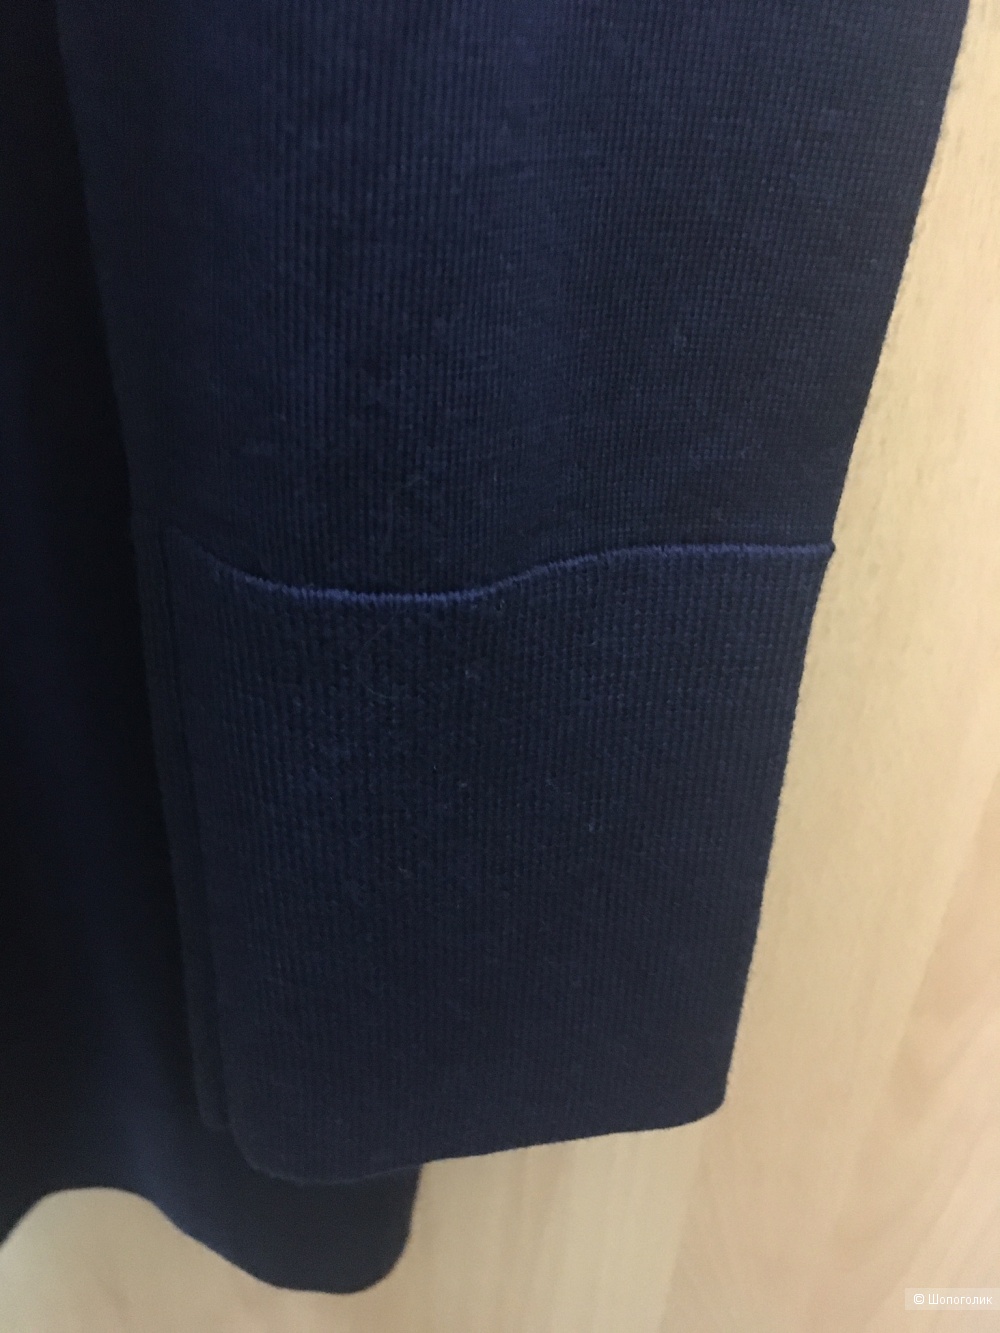 Водолазка свитер Cos размер M/L